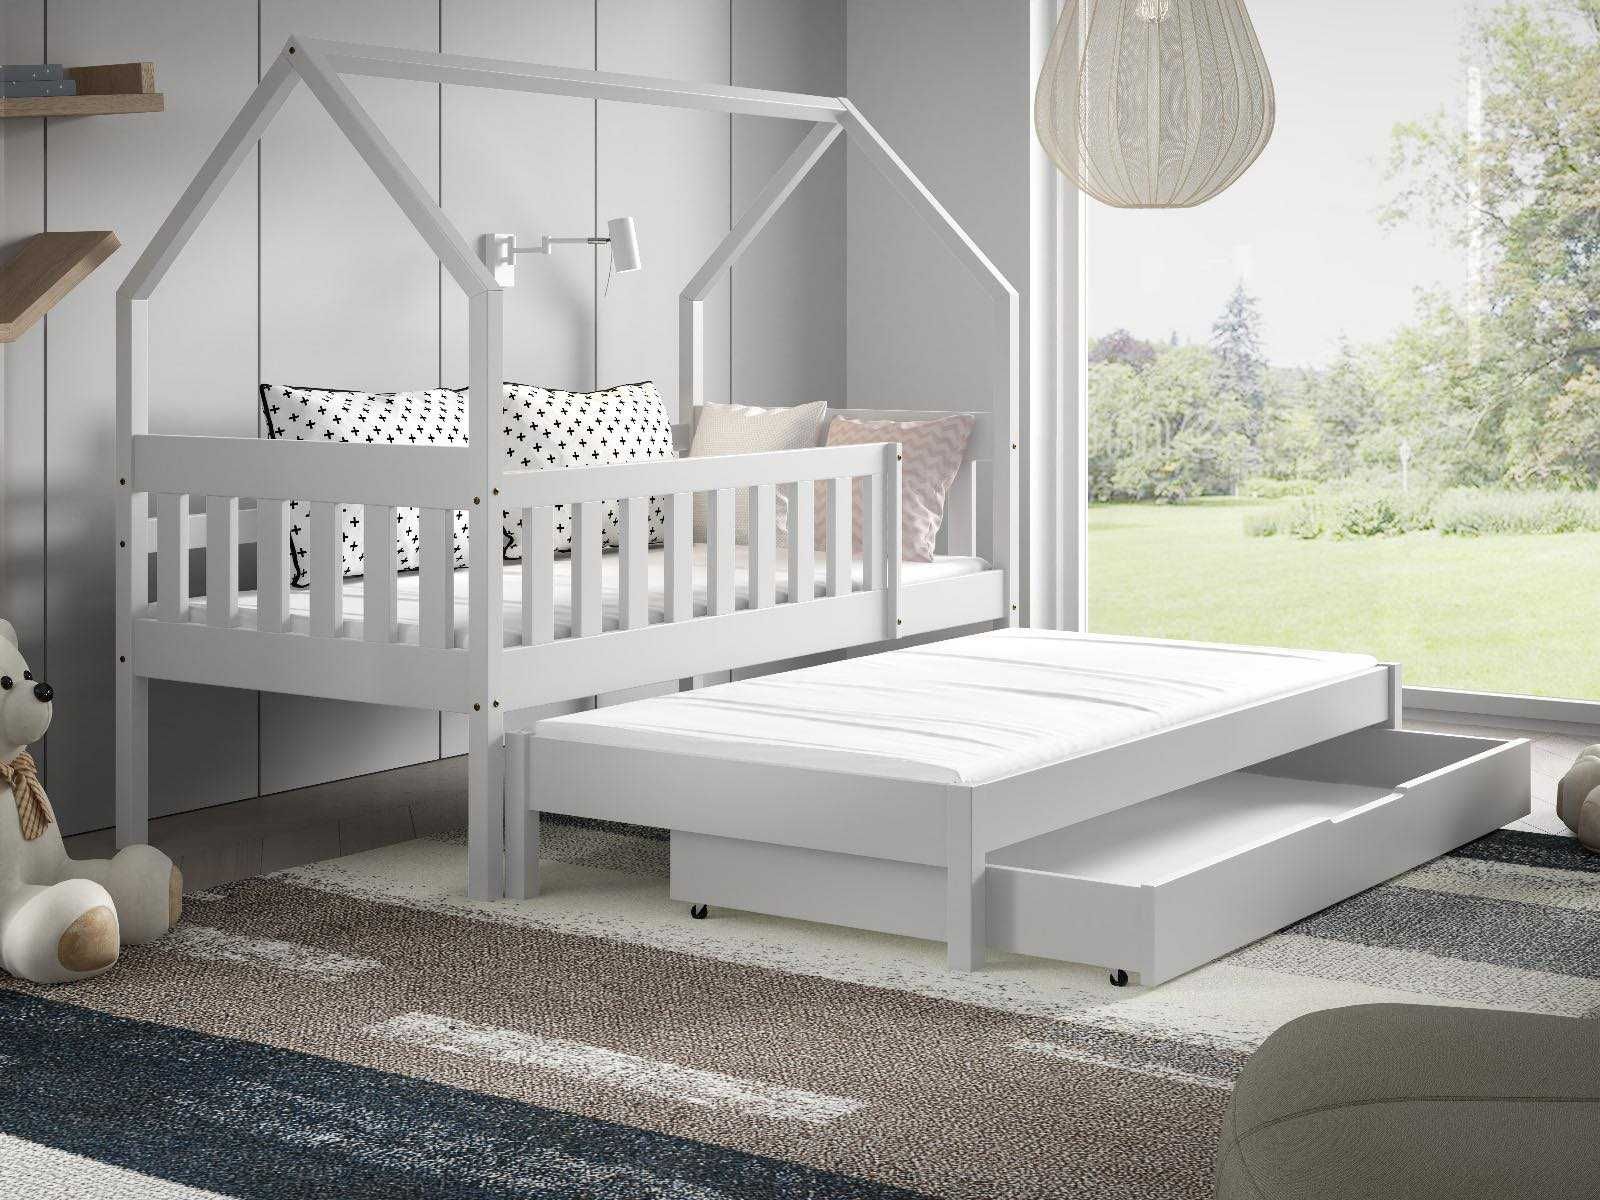 Łóżko dla 2 dzieci wysuwane spanie DOMEK LUNA 160x80